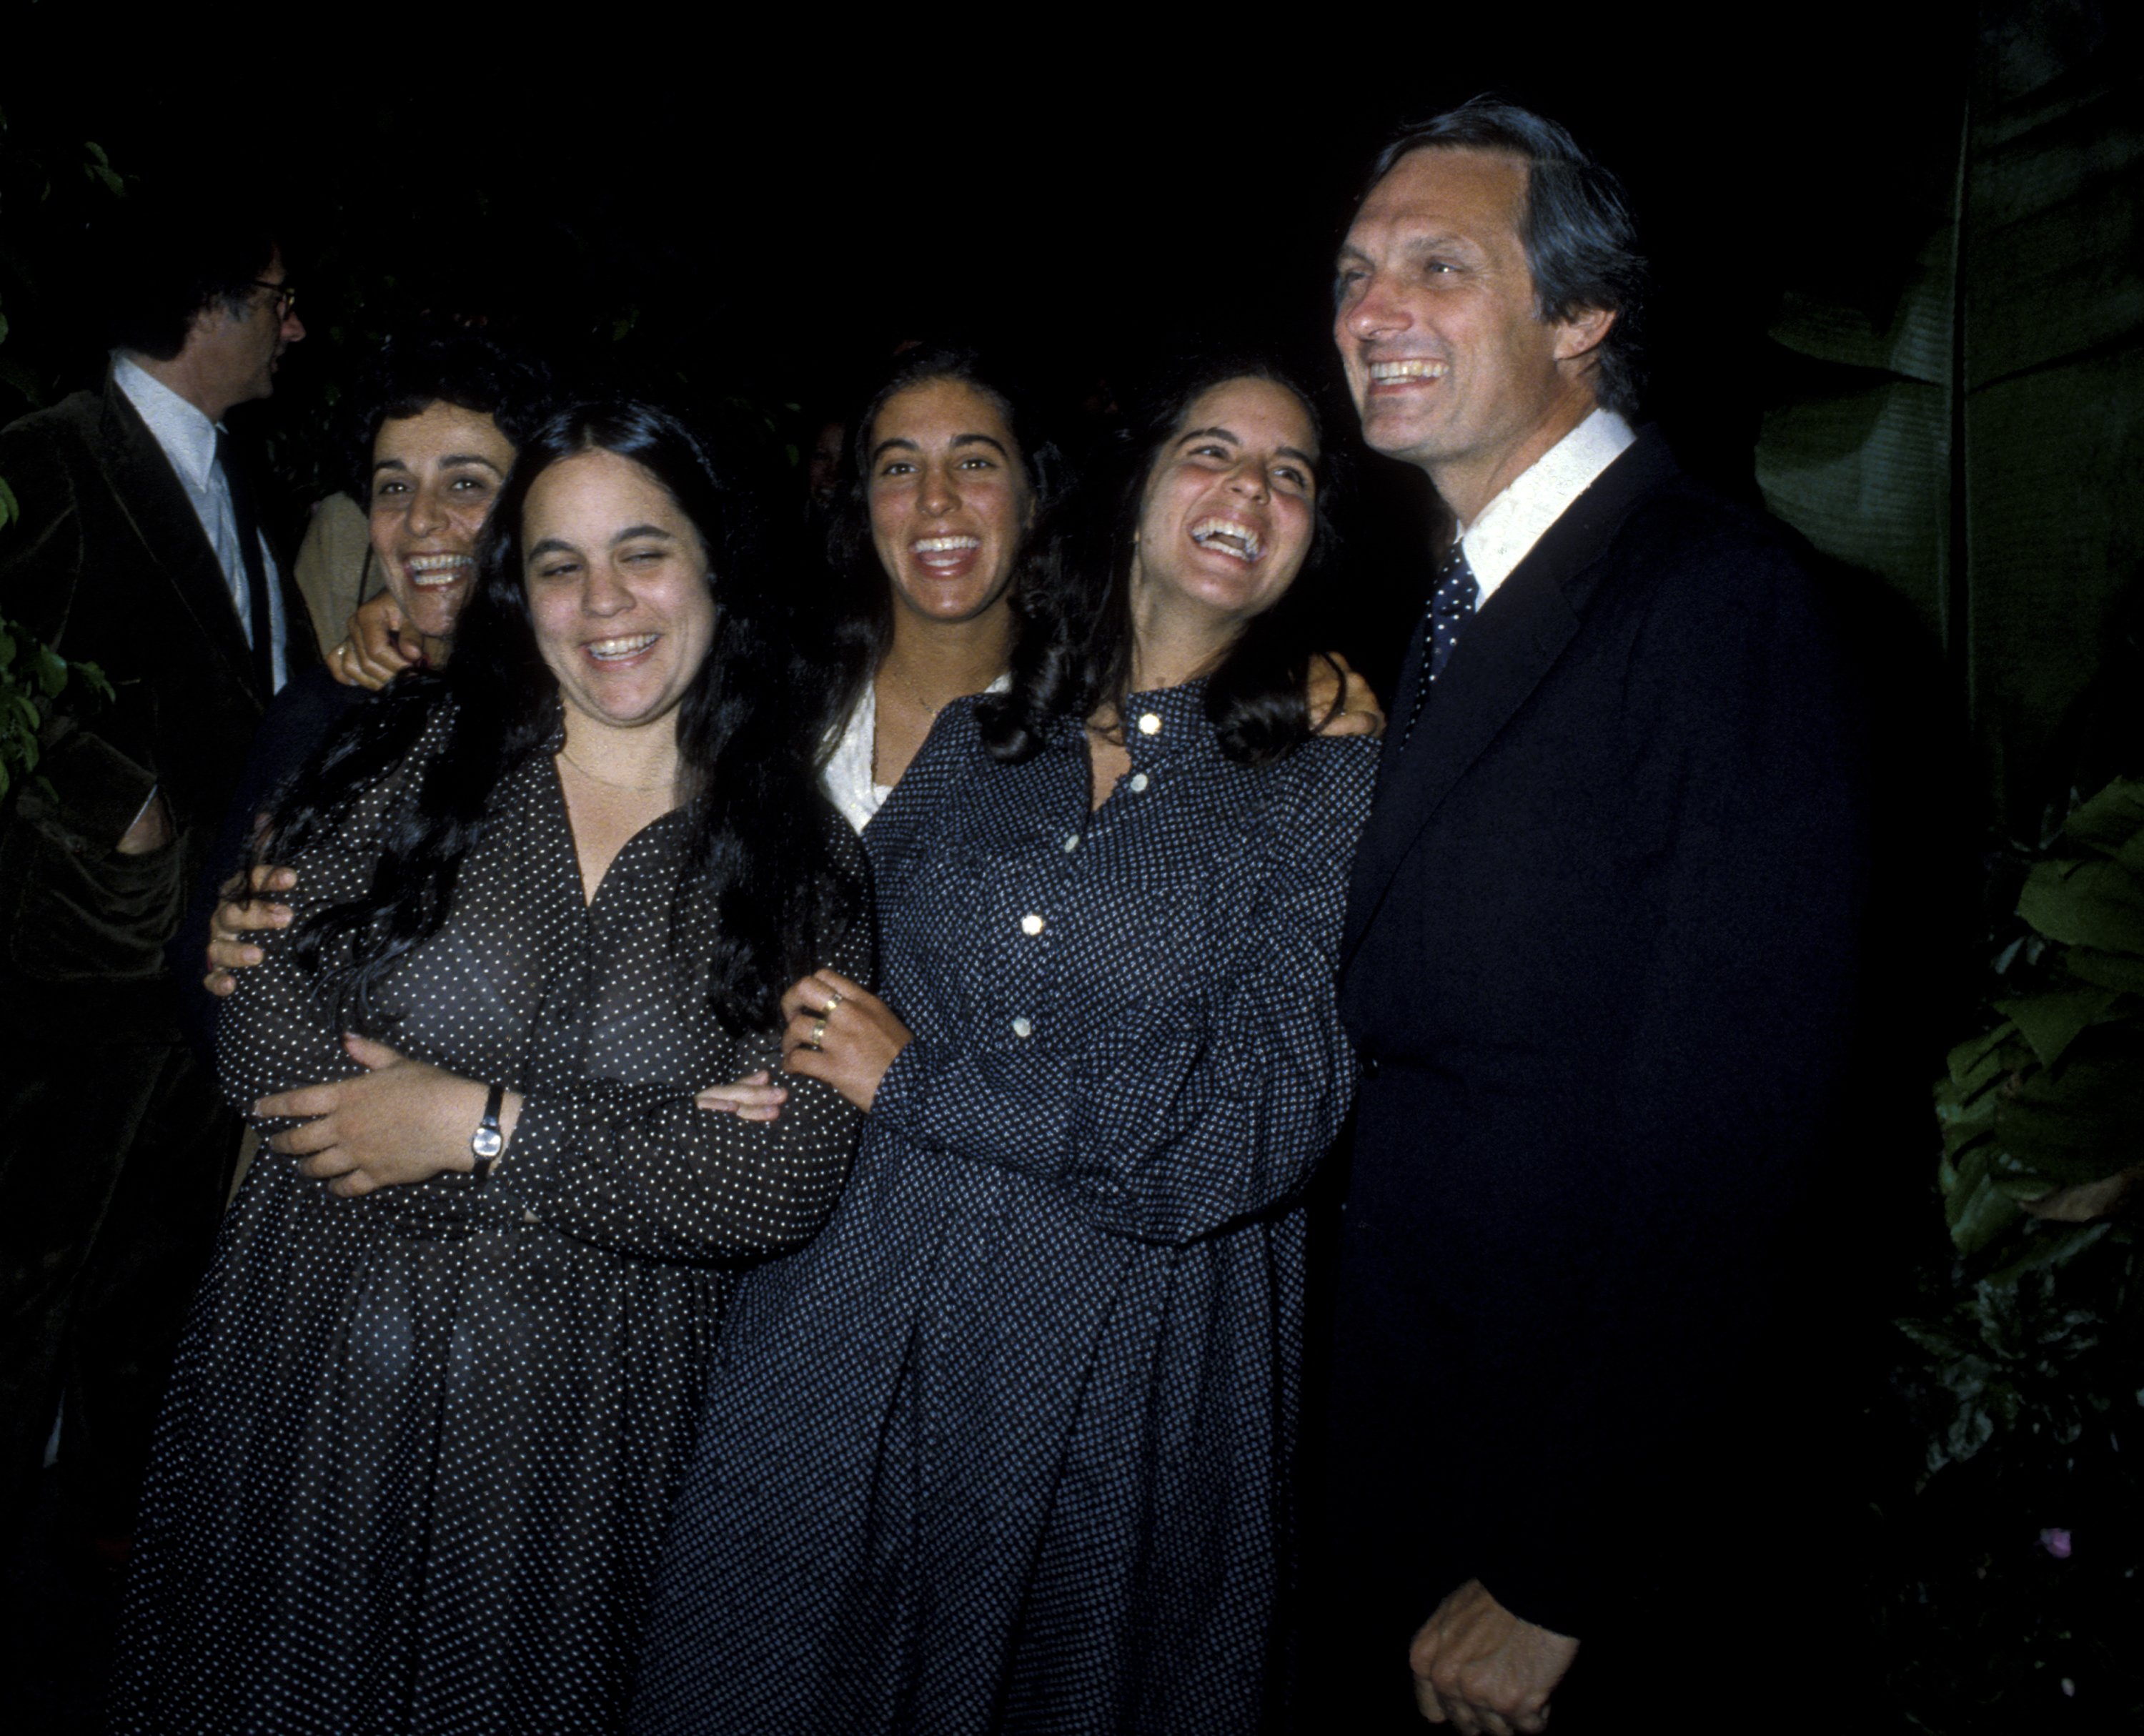 Alan Alda, sa femme Arlene Weiss, et ses filles Elizabeth, Eve, et Beatrice Alda à la fête du 19e anniversaire d'Elizabeth Alda, le 15 août 1979, à New York | Source : Getty Images